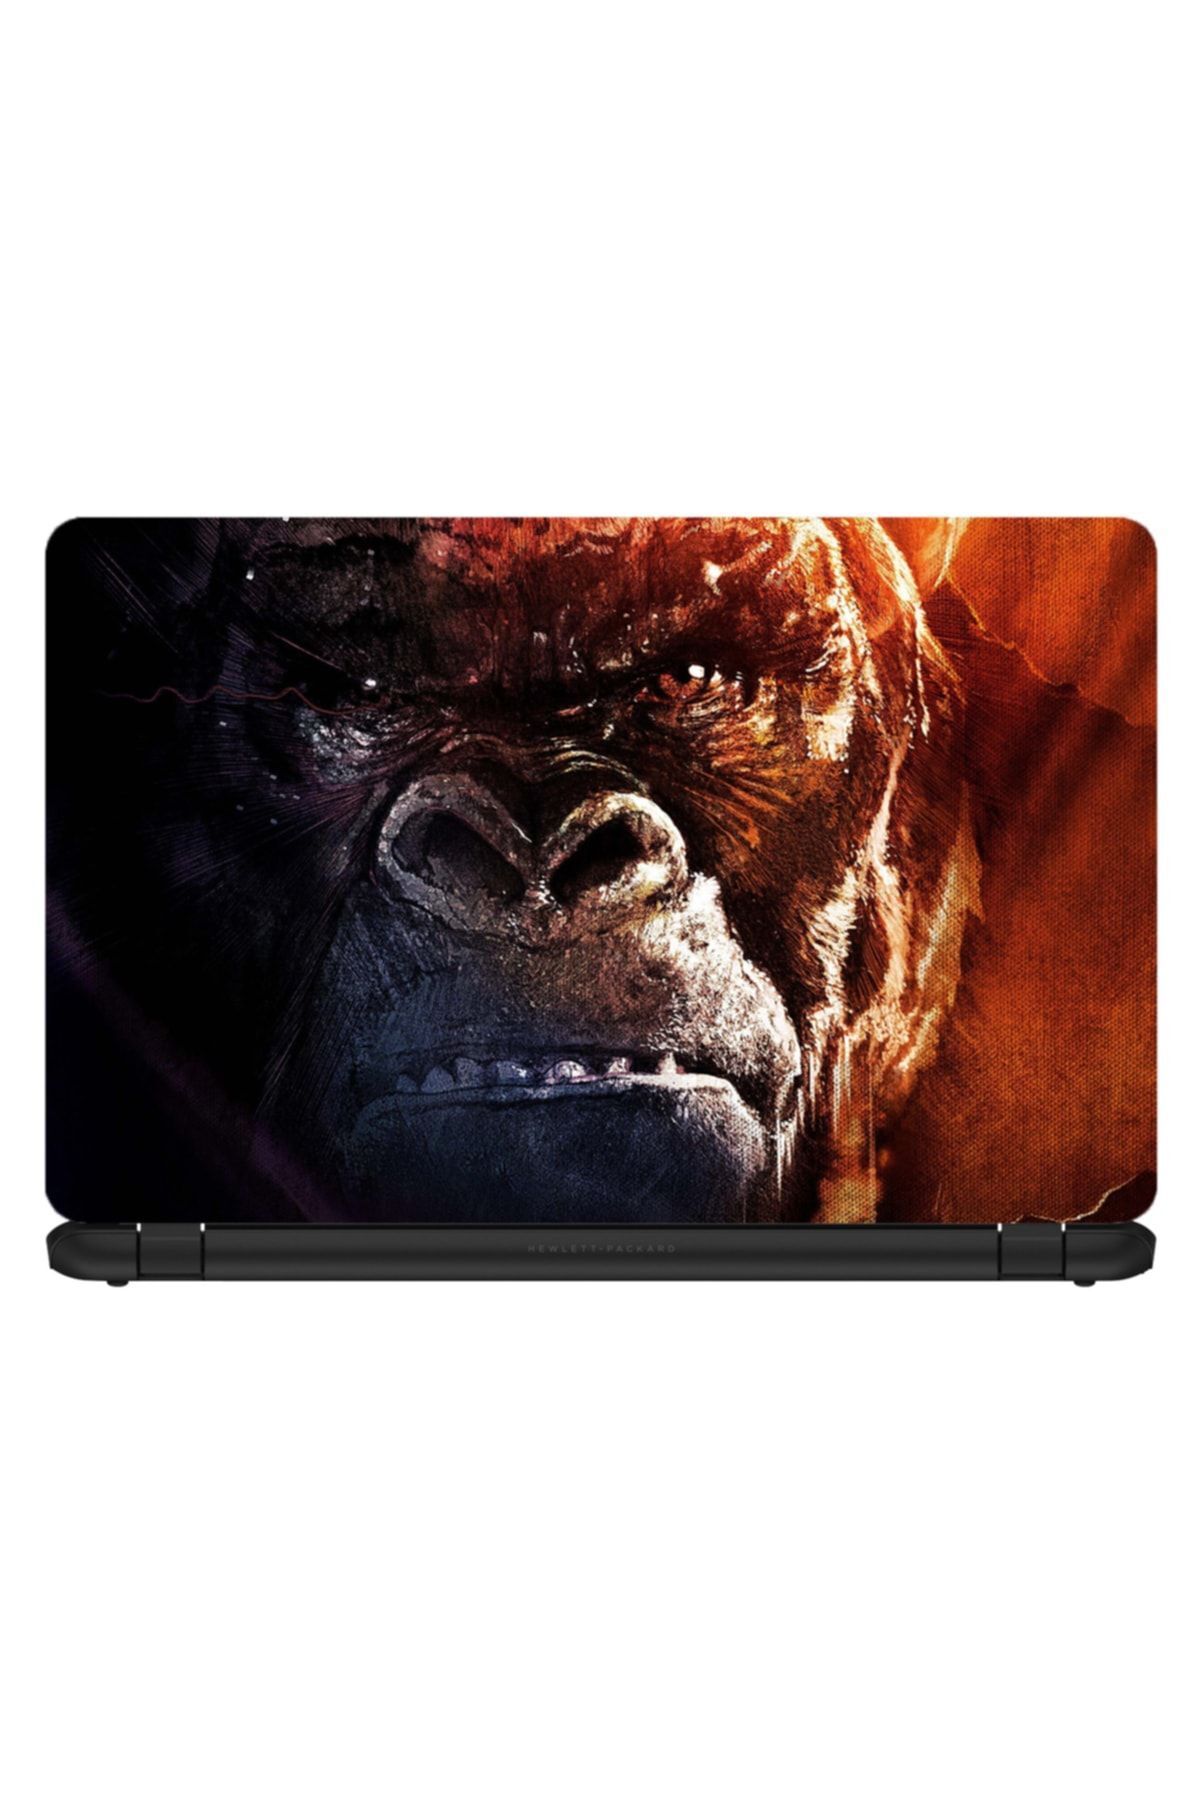 KT Decor King Kong Laptop Sticker 15.6 Inch